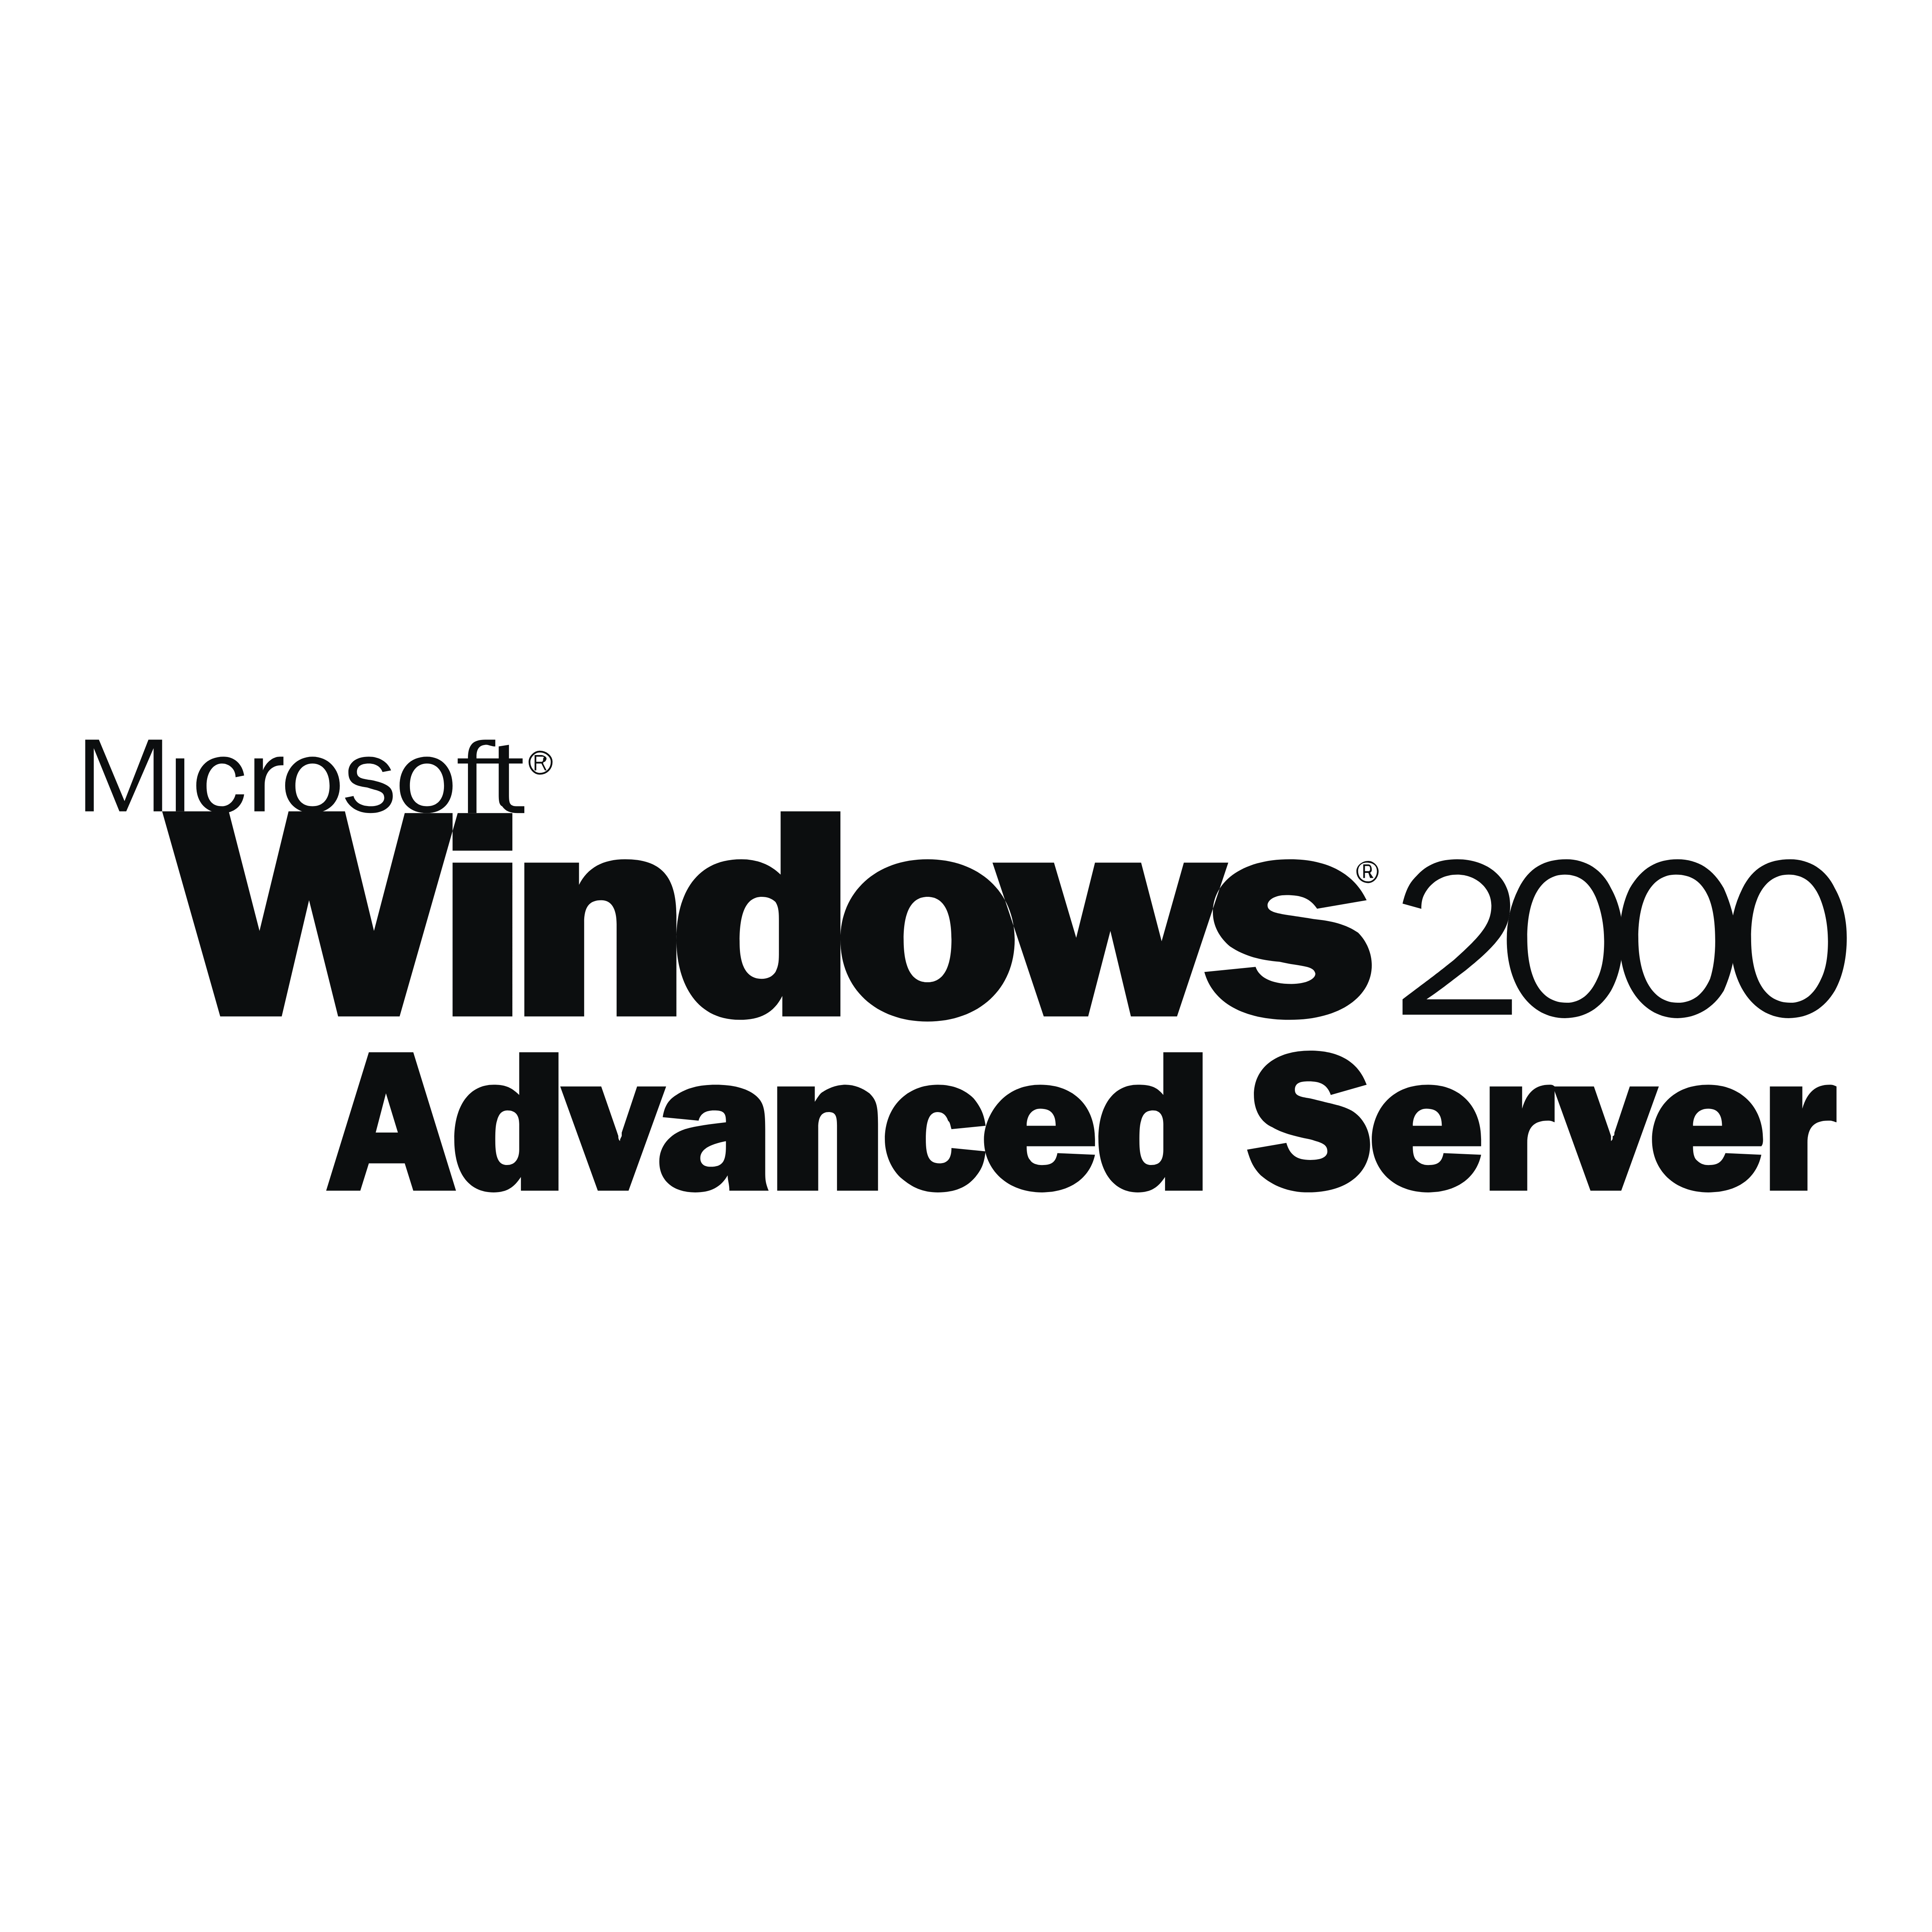 Microsoft Windows 2000 Logo - Windows – Logos Download